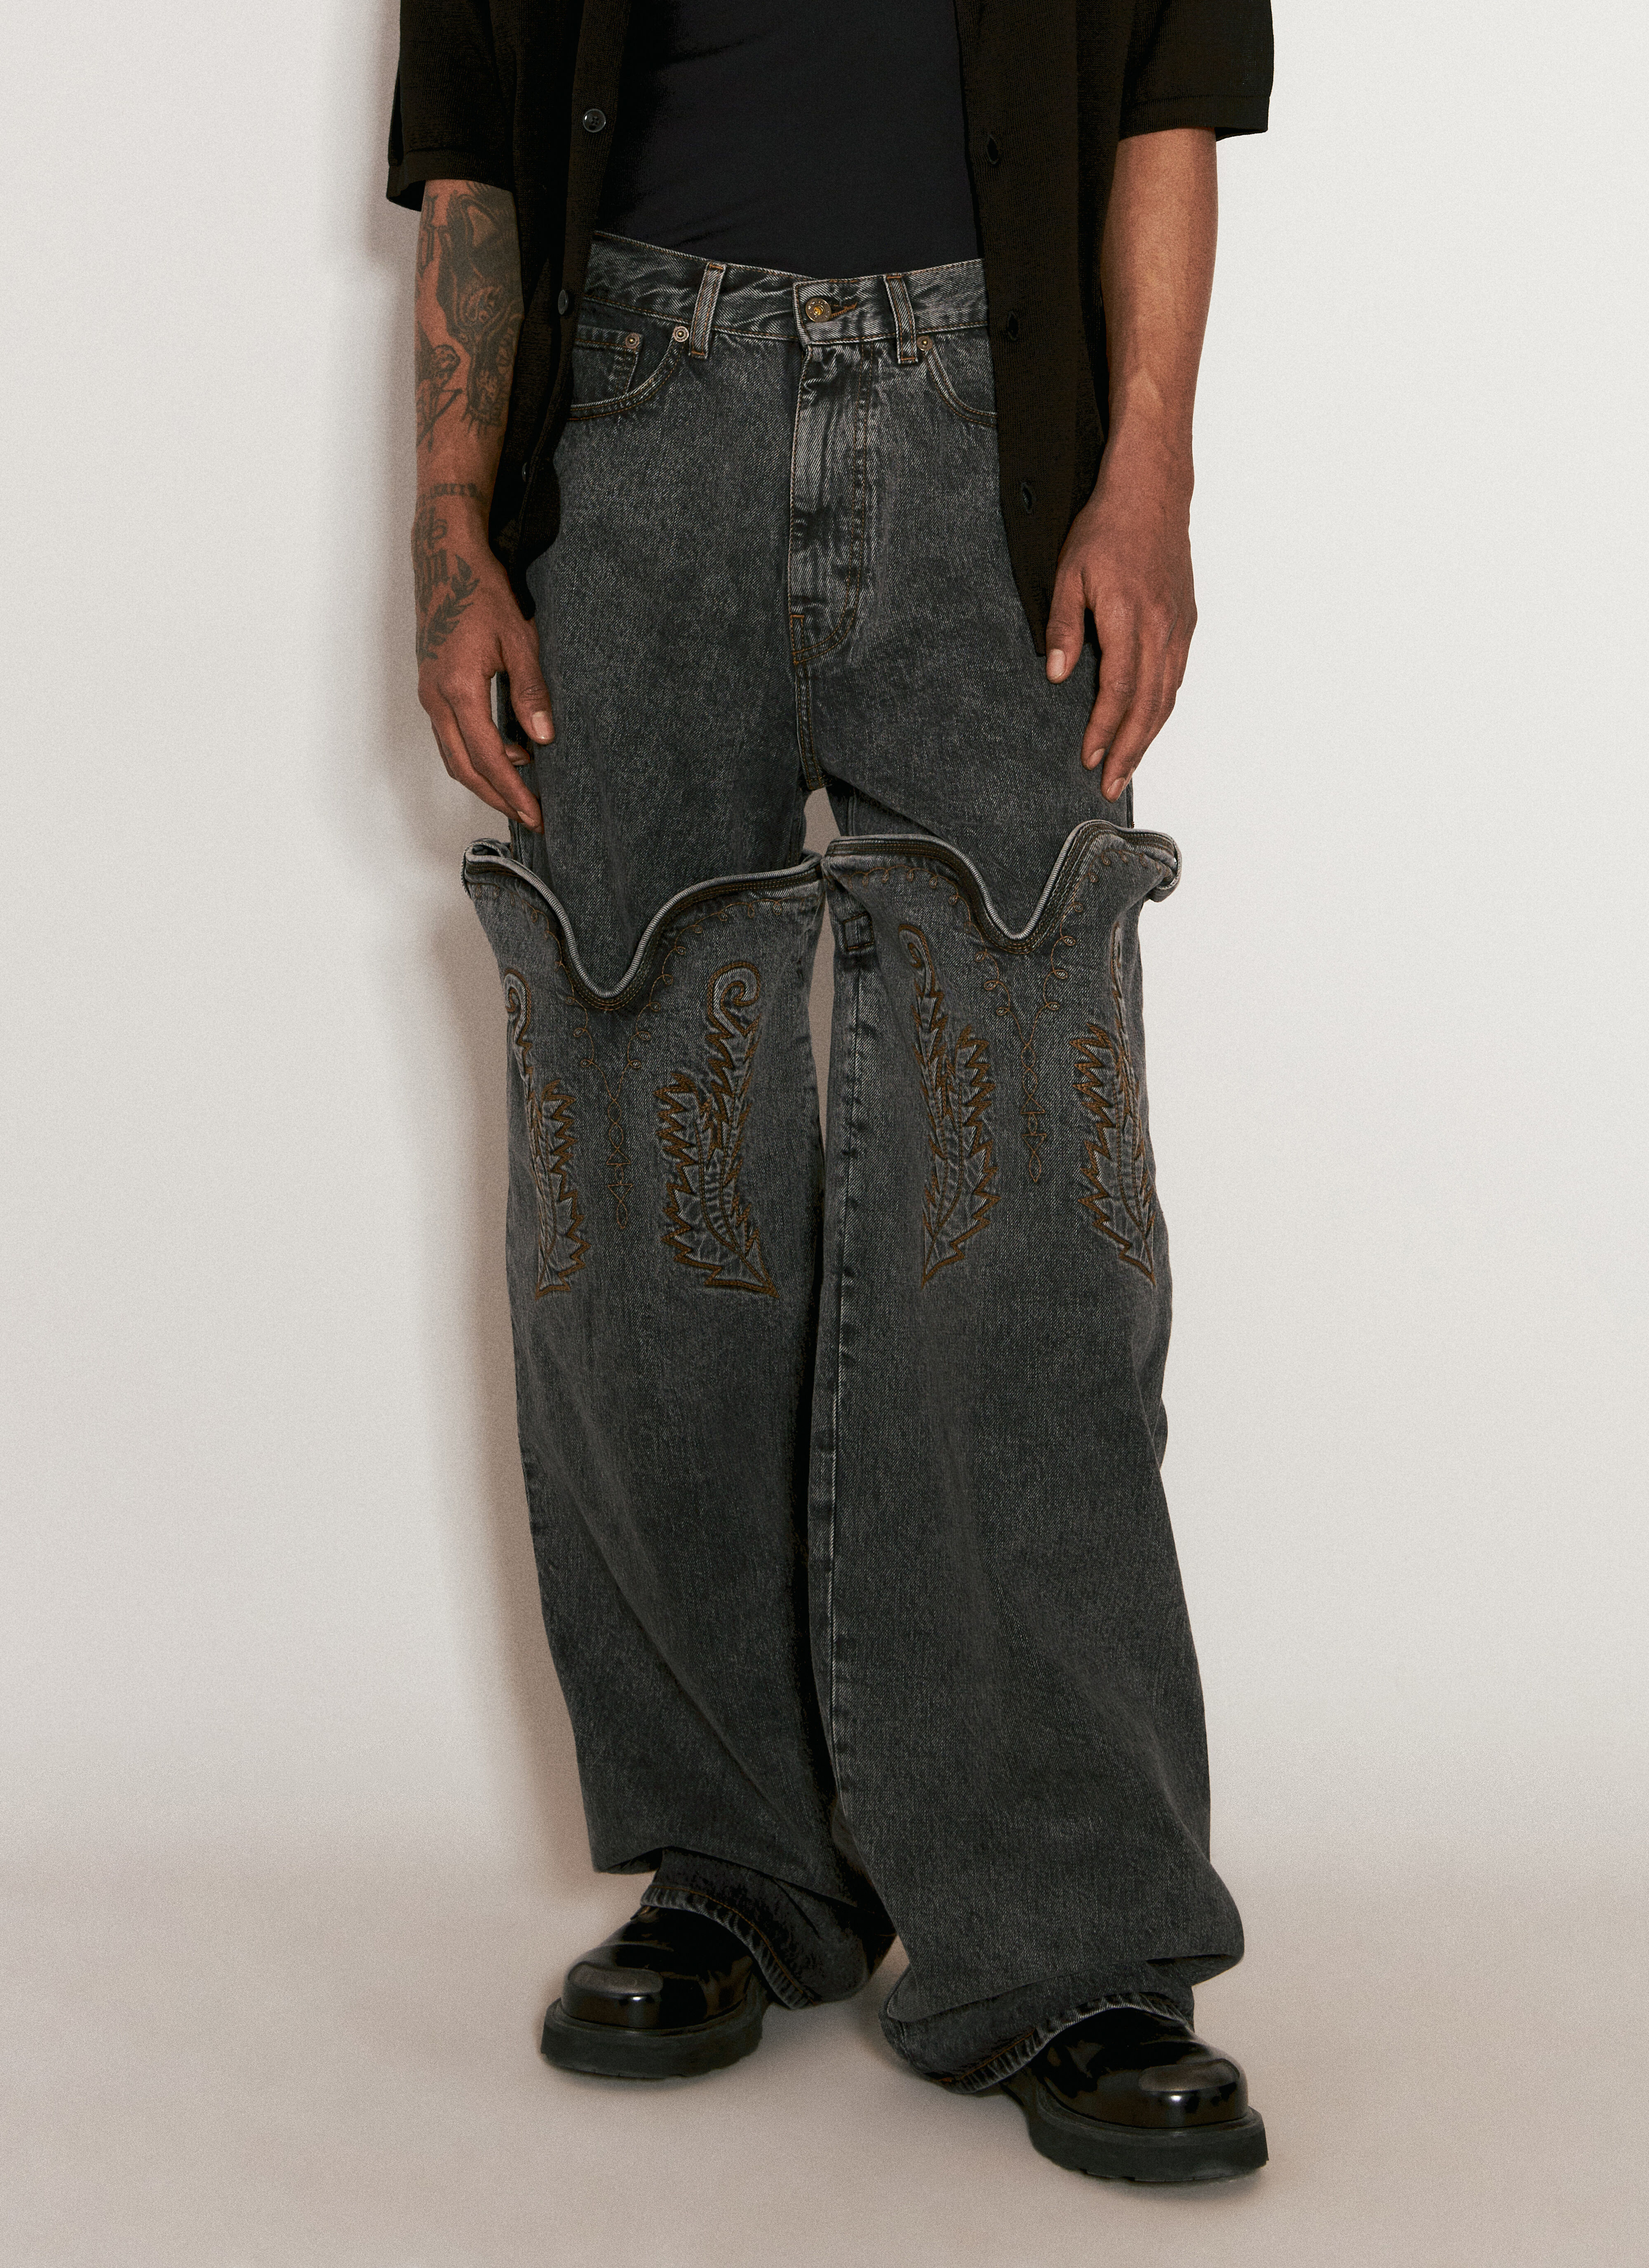 Y/PROJECT Evergreen Maxi Cowboy Cuff Jeans Black ypr0156003